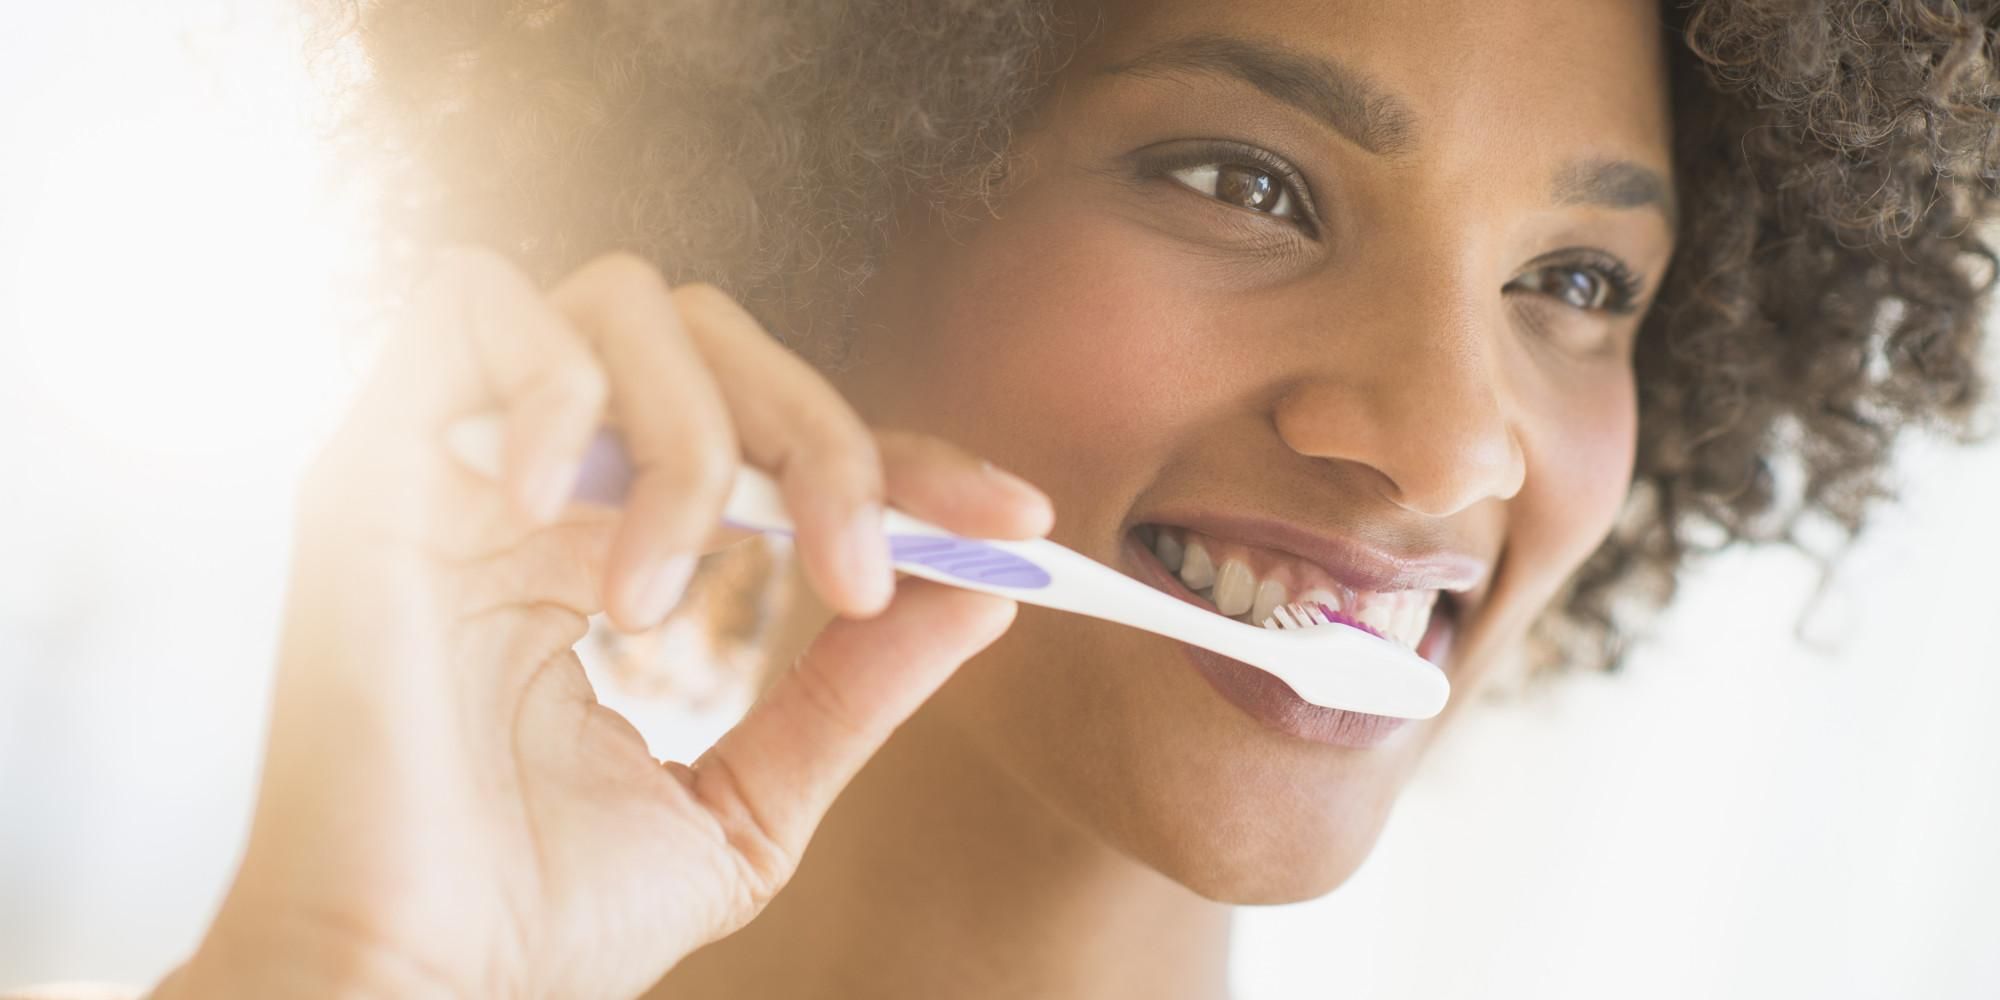 Стоматологи назвали продукт, который может очистить зубы не хуже зубной пасты